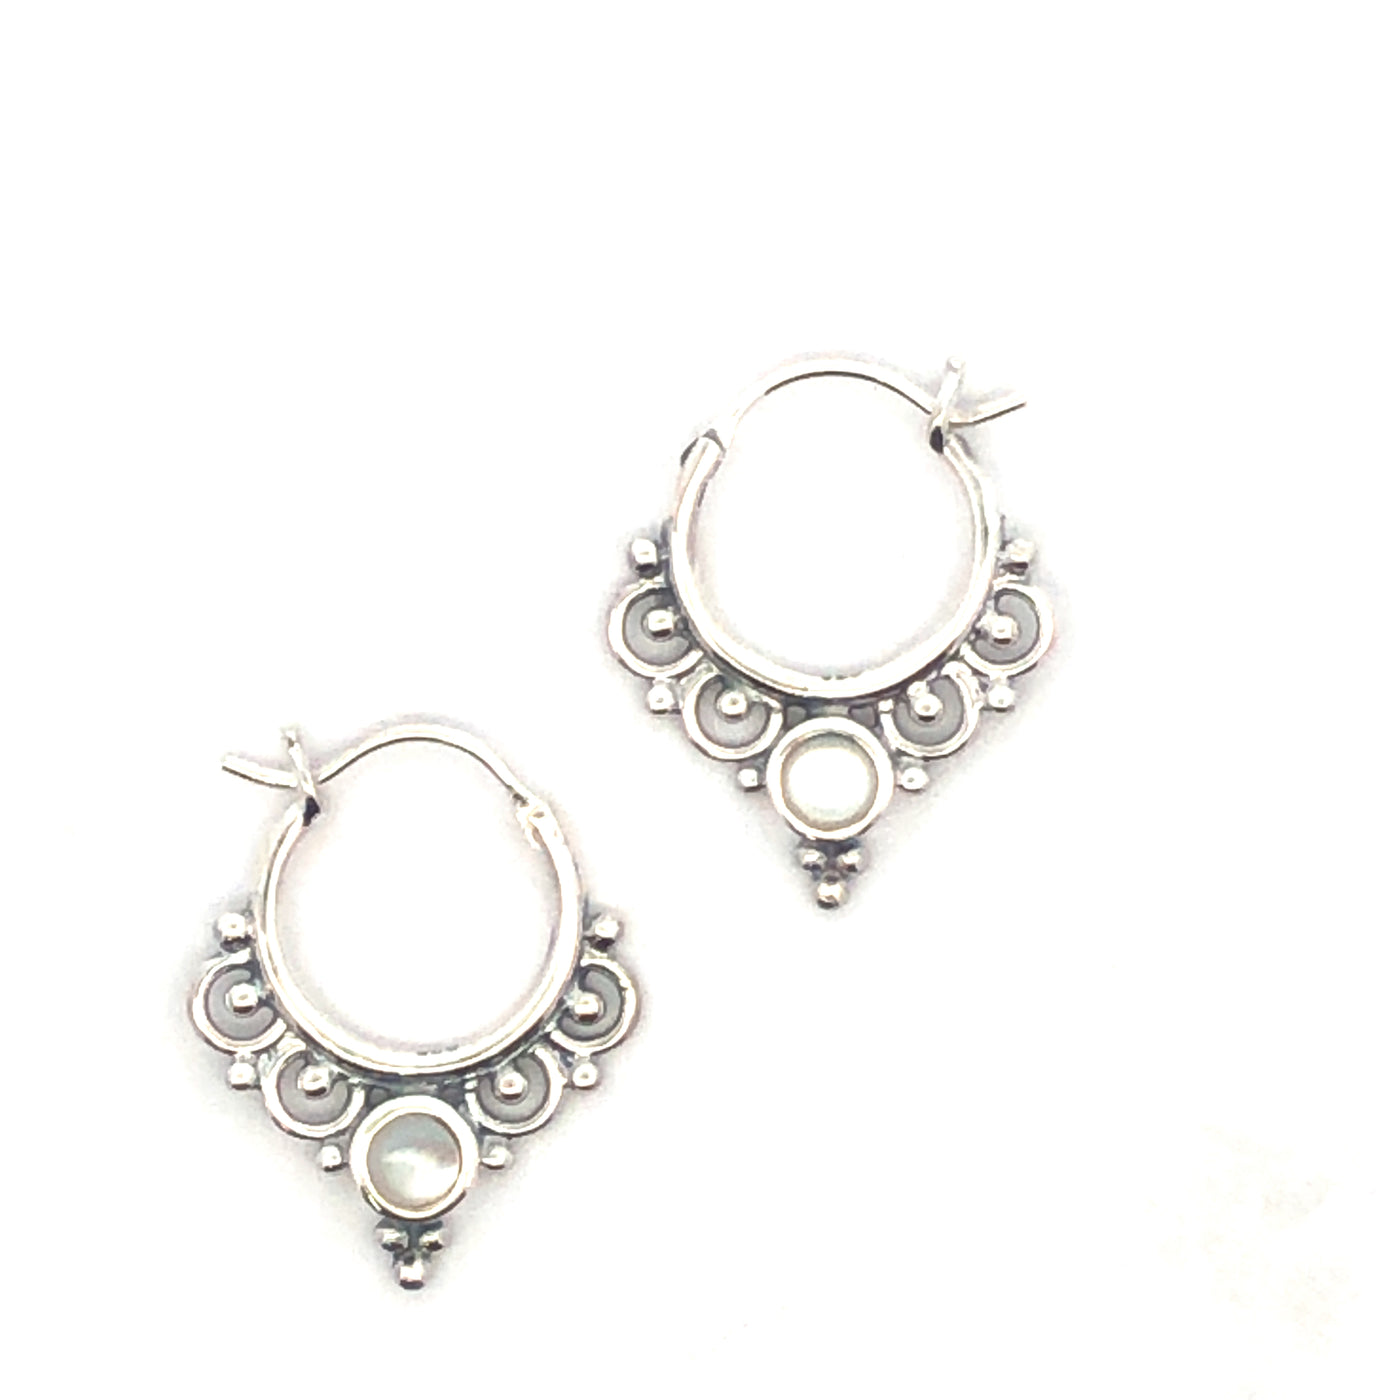 Onatah Sterling Silver Mandala Hoop Earrings Set With Mother Of Pearl